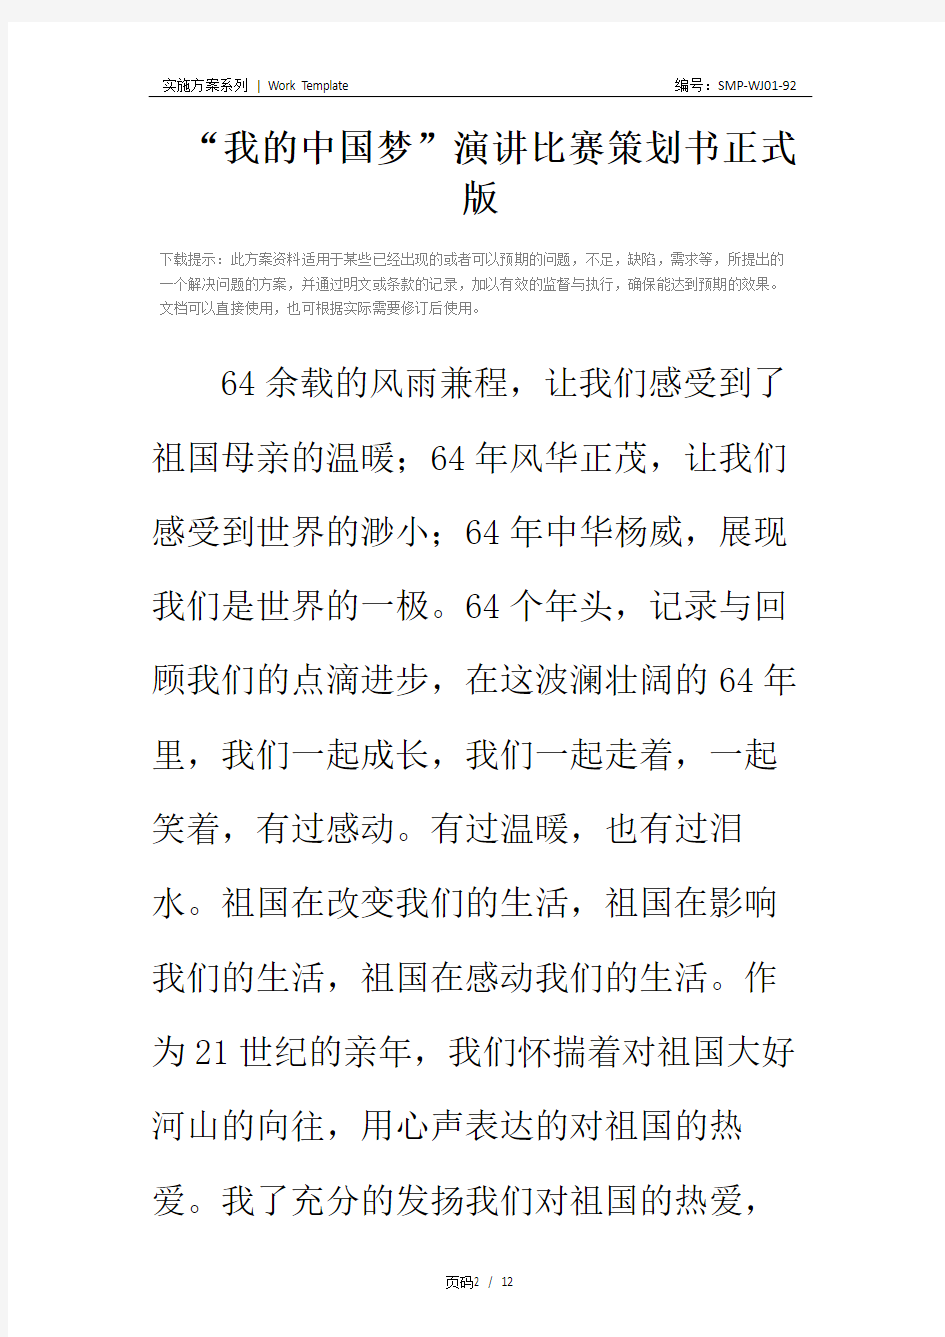 “我的中国梦”演讲比赛策划书正式版